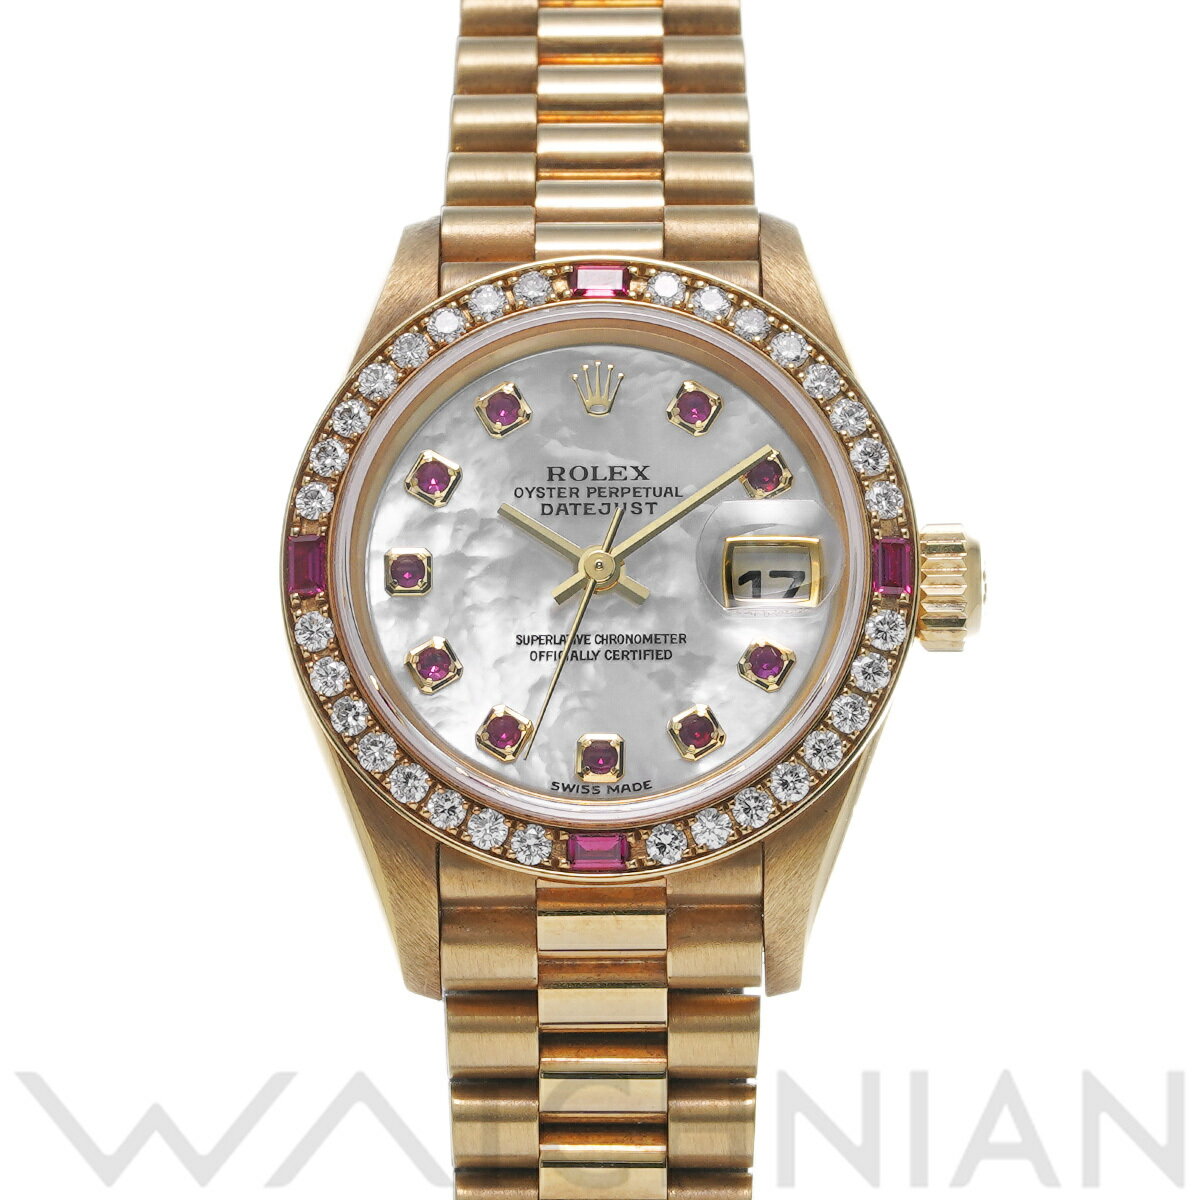 【ローン60回払い無金利】【中古】 ロレックス ROLEX デイトジャスト 79068NGR K番(2001年頃製造) ホワイトシェル/ルビー レディース 腕時計 ロレックス 時計 高級腕時計 ブランド